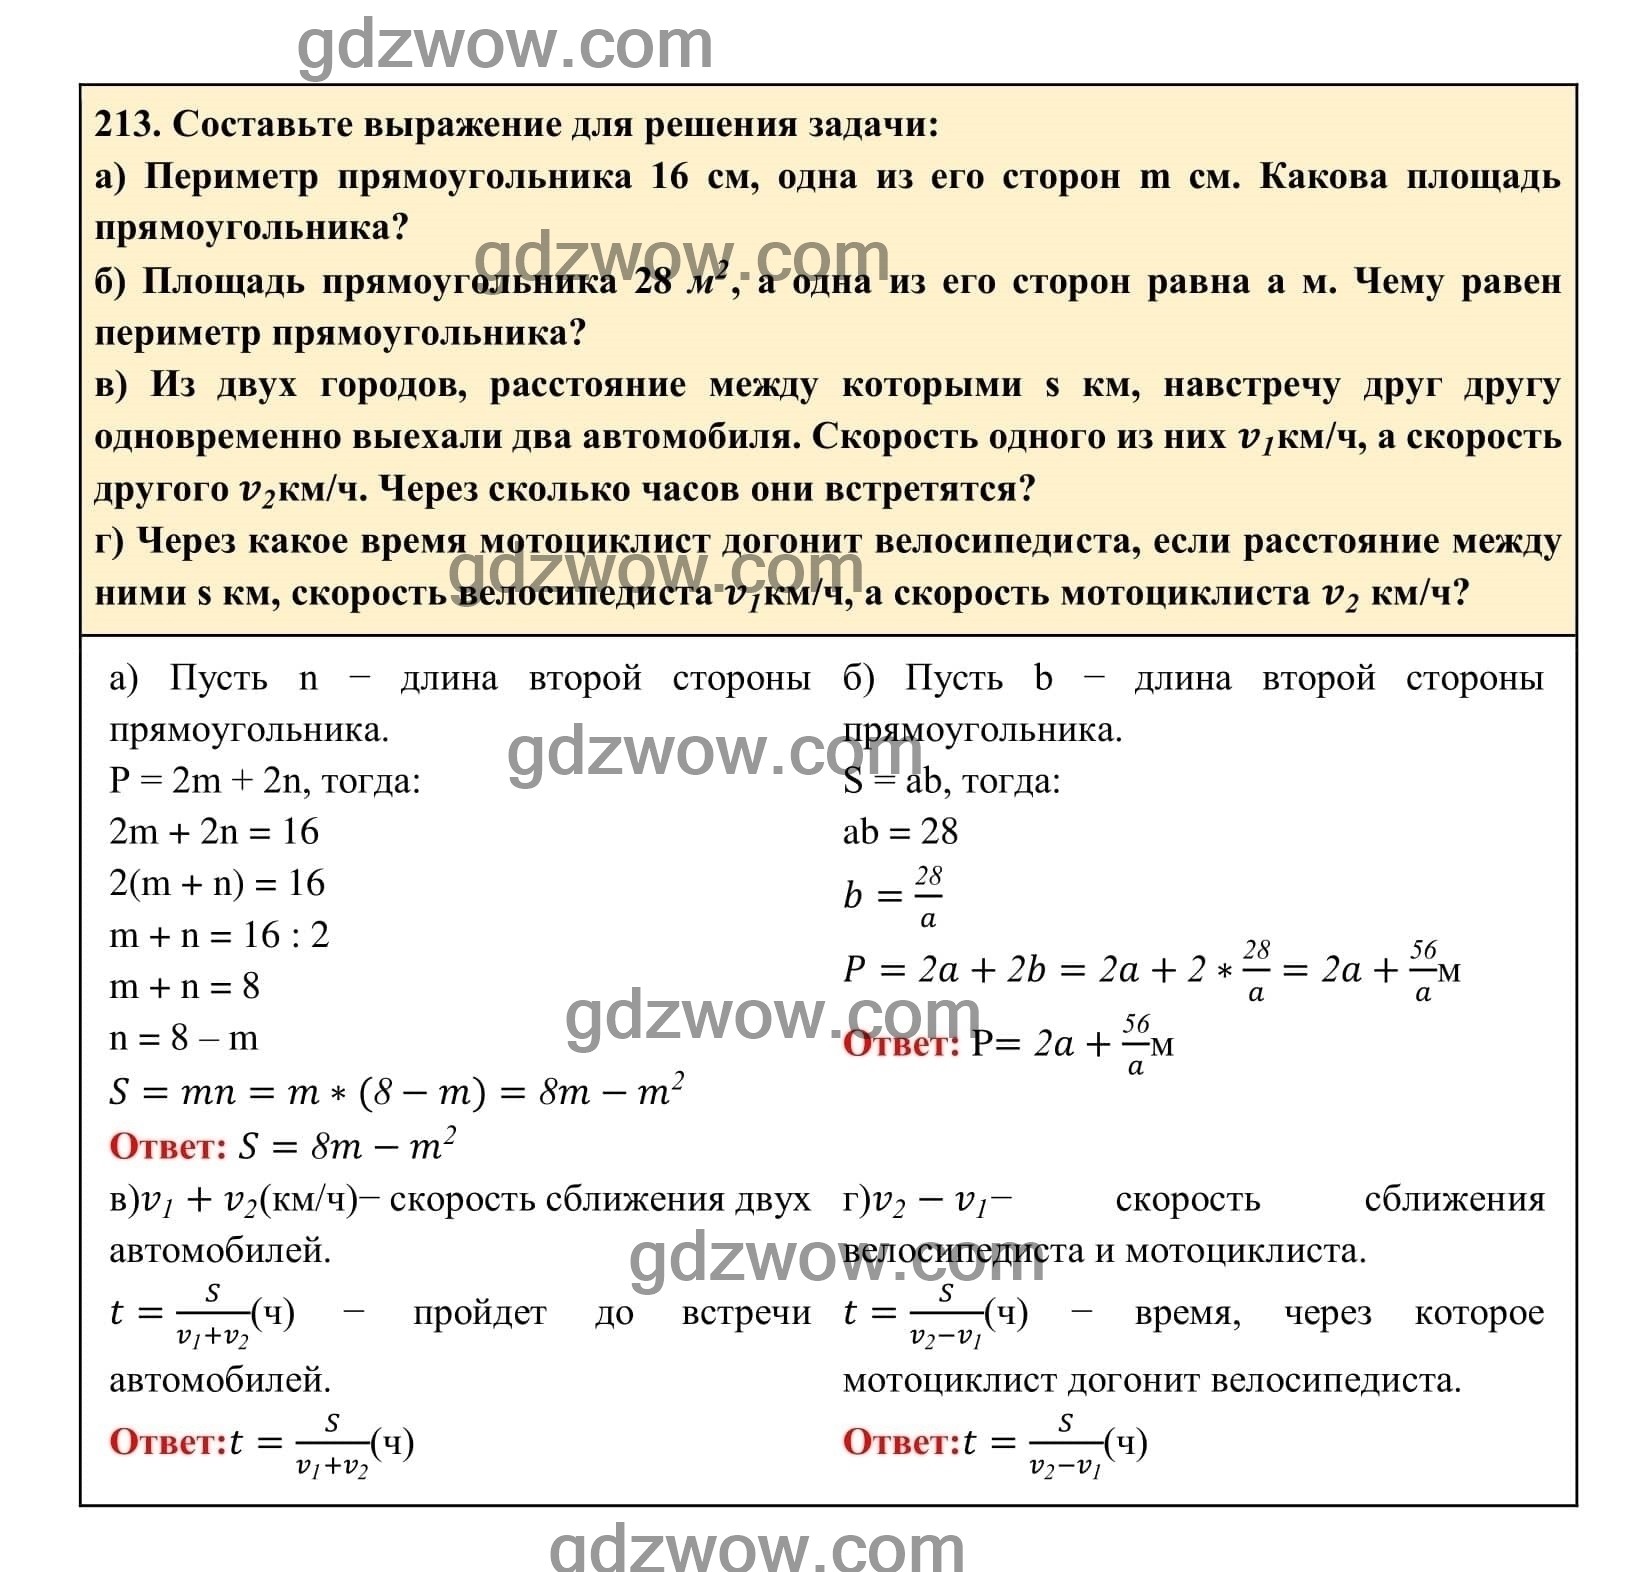 Упражнение 213 - ГДЗ по Алгебре 7 класс Учебник Макарычев (решебник) - GDZwow